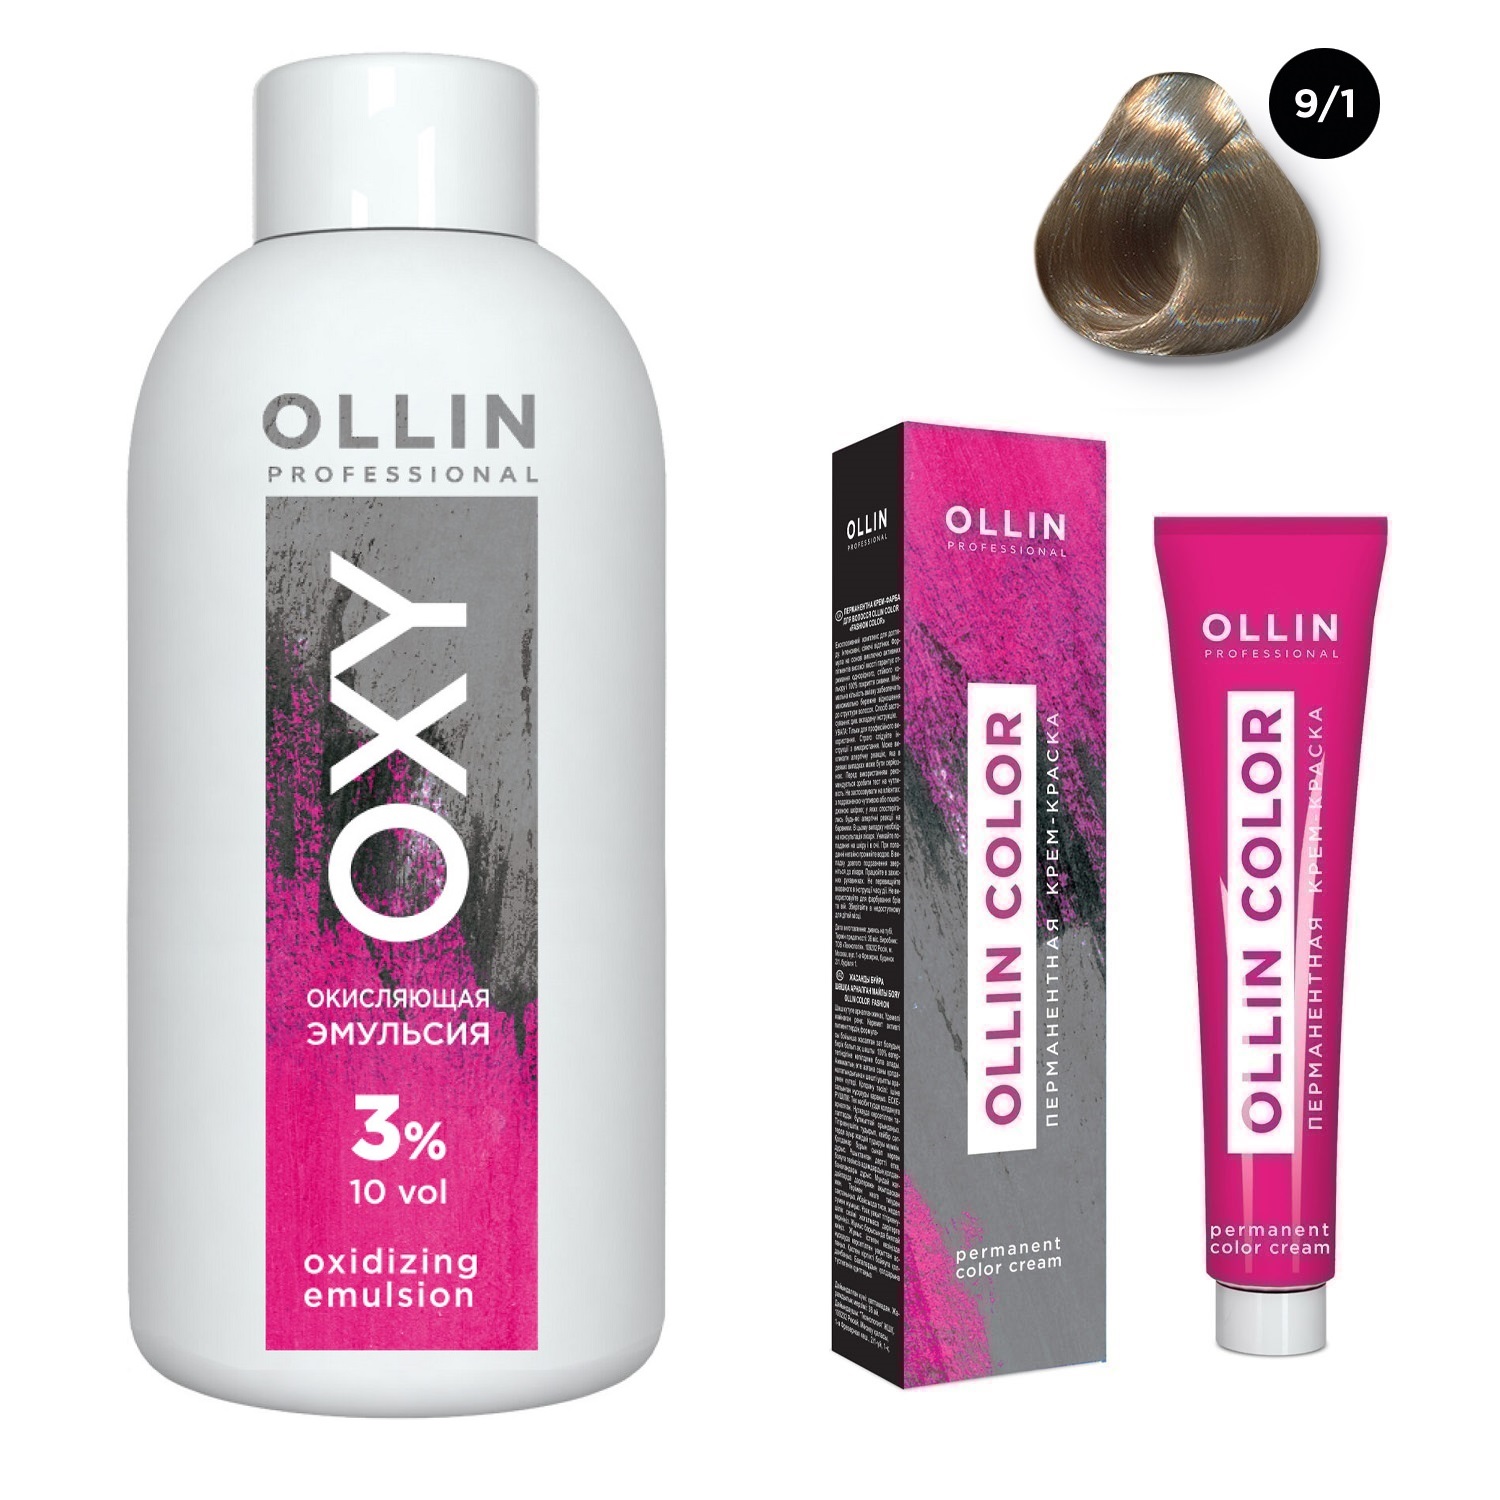 Ollin Professional Набор Перманентная крем-краска для волос Ollin Color оттенок 9/1 блондин пепельный 100 мл + Окисляющая эмульсия Oxy 3% 150 мл (Ollin Professional, Ollin Color)